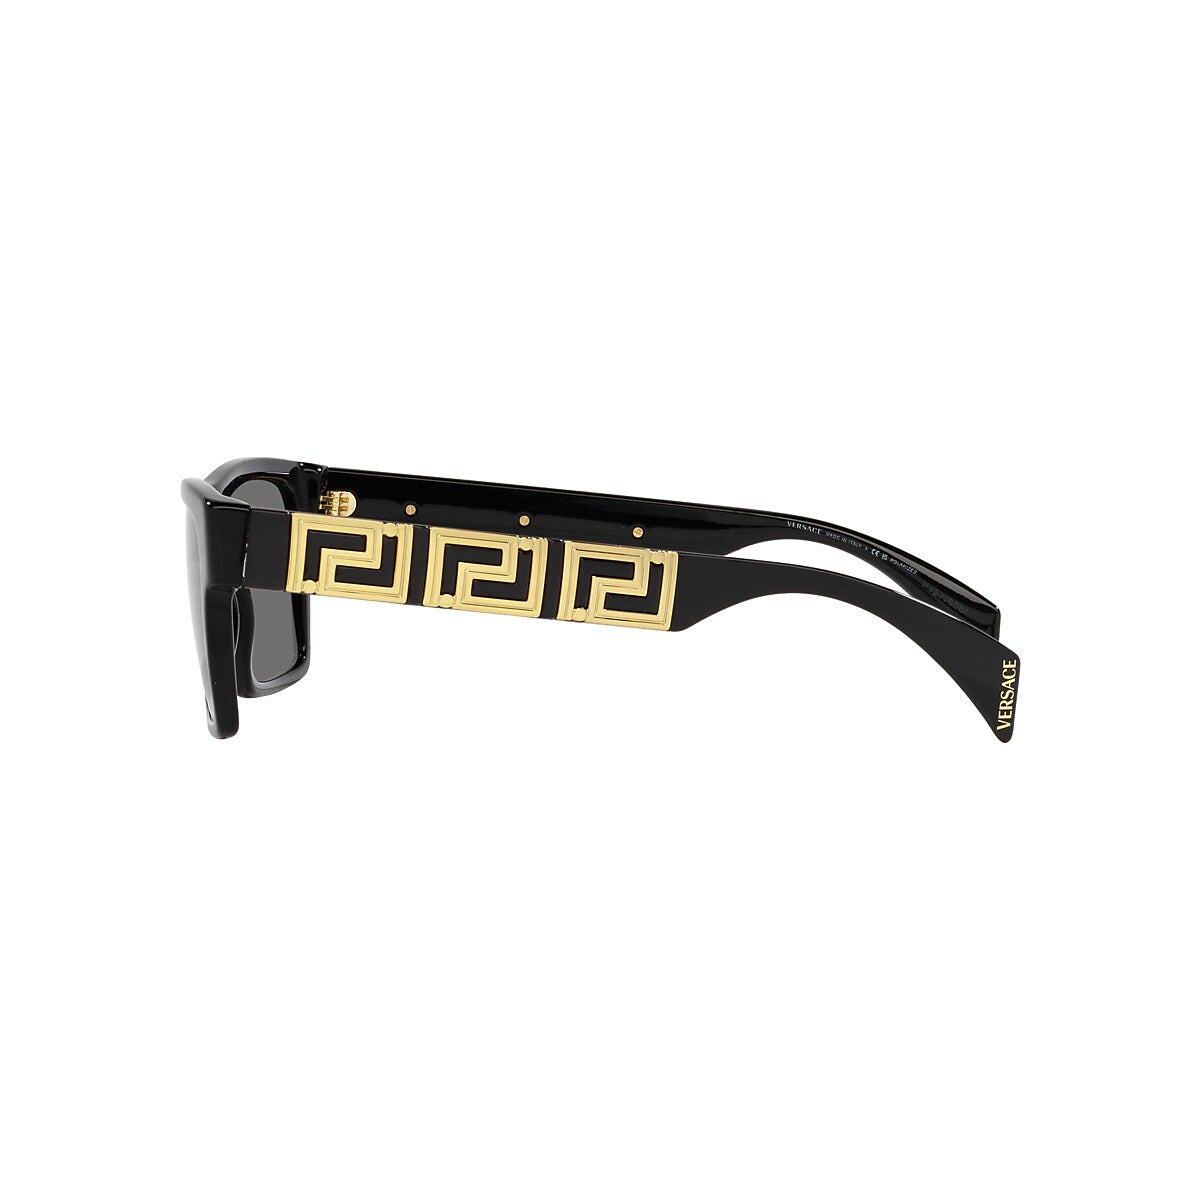 VERSACE VE4445 Black - Men Luxury Sunglasses, Polar Dark Grey Lens